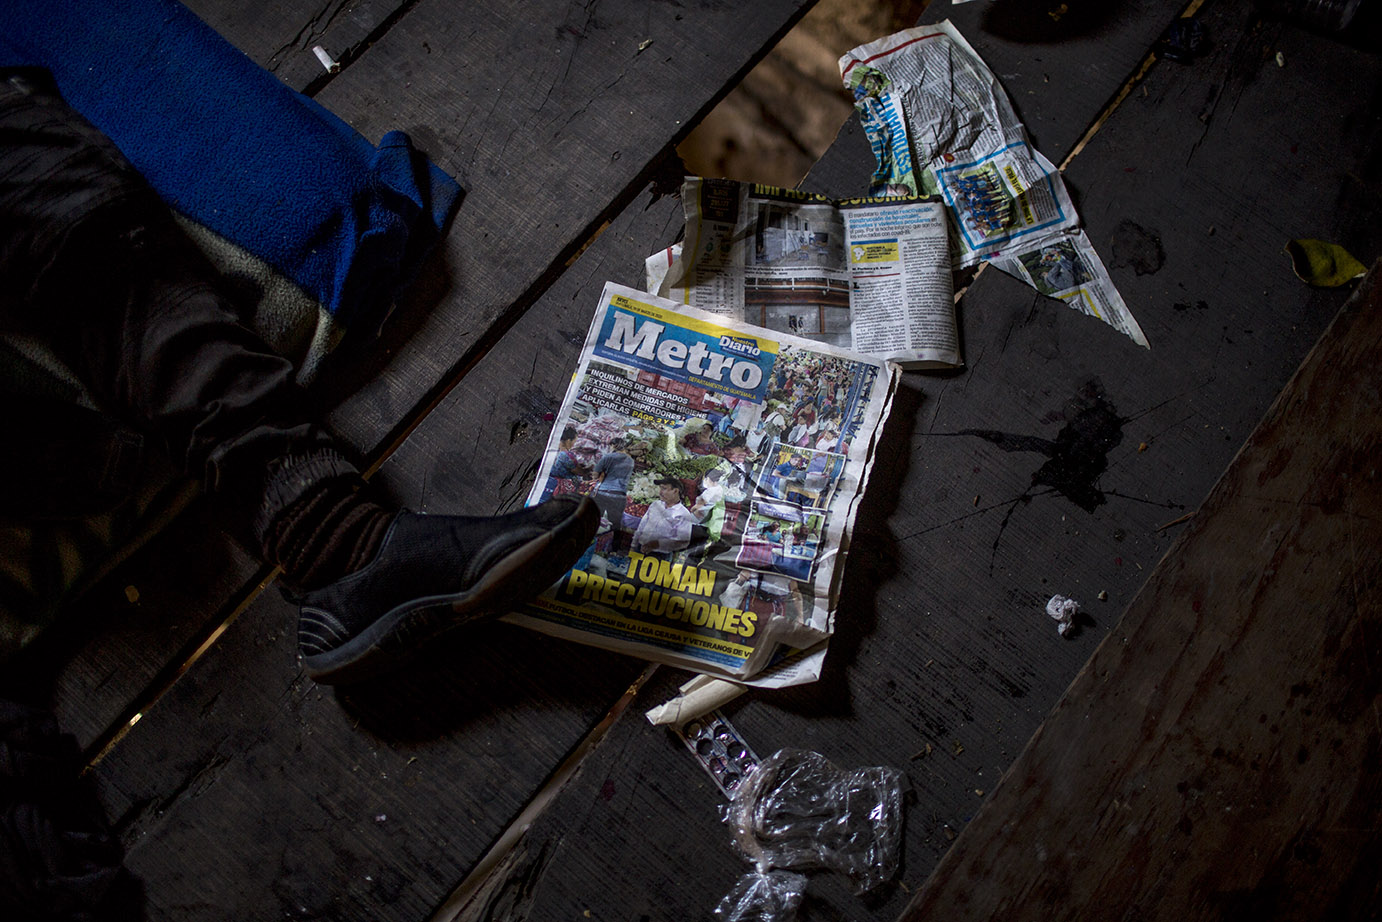 Un vagabundo descansa en el piso de una casa abandonada donde luce el detalle de la portada de un periódico de reciente publicación. Simone Dalmasso